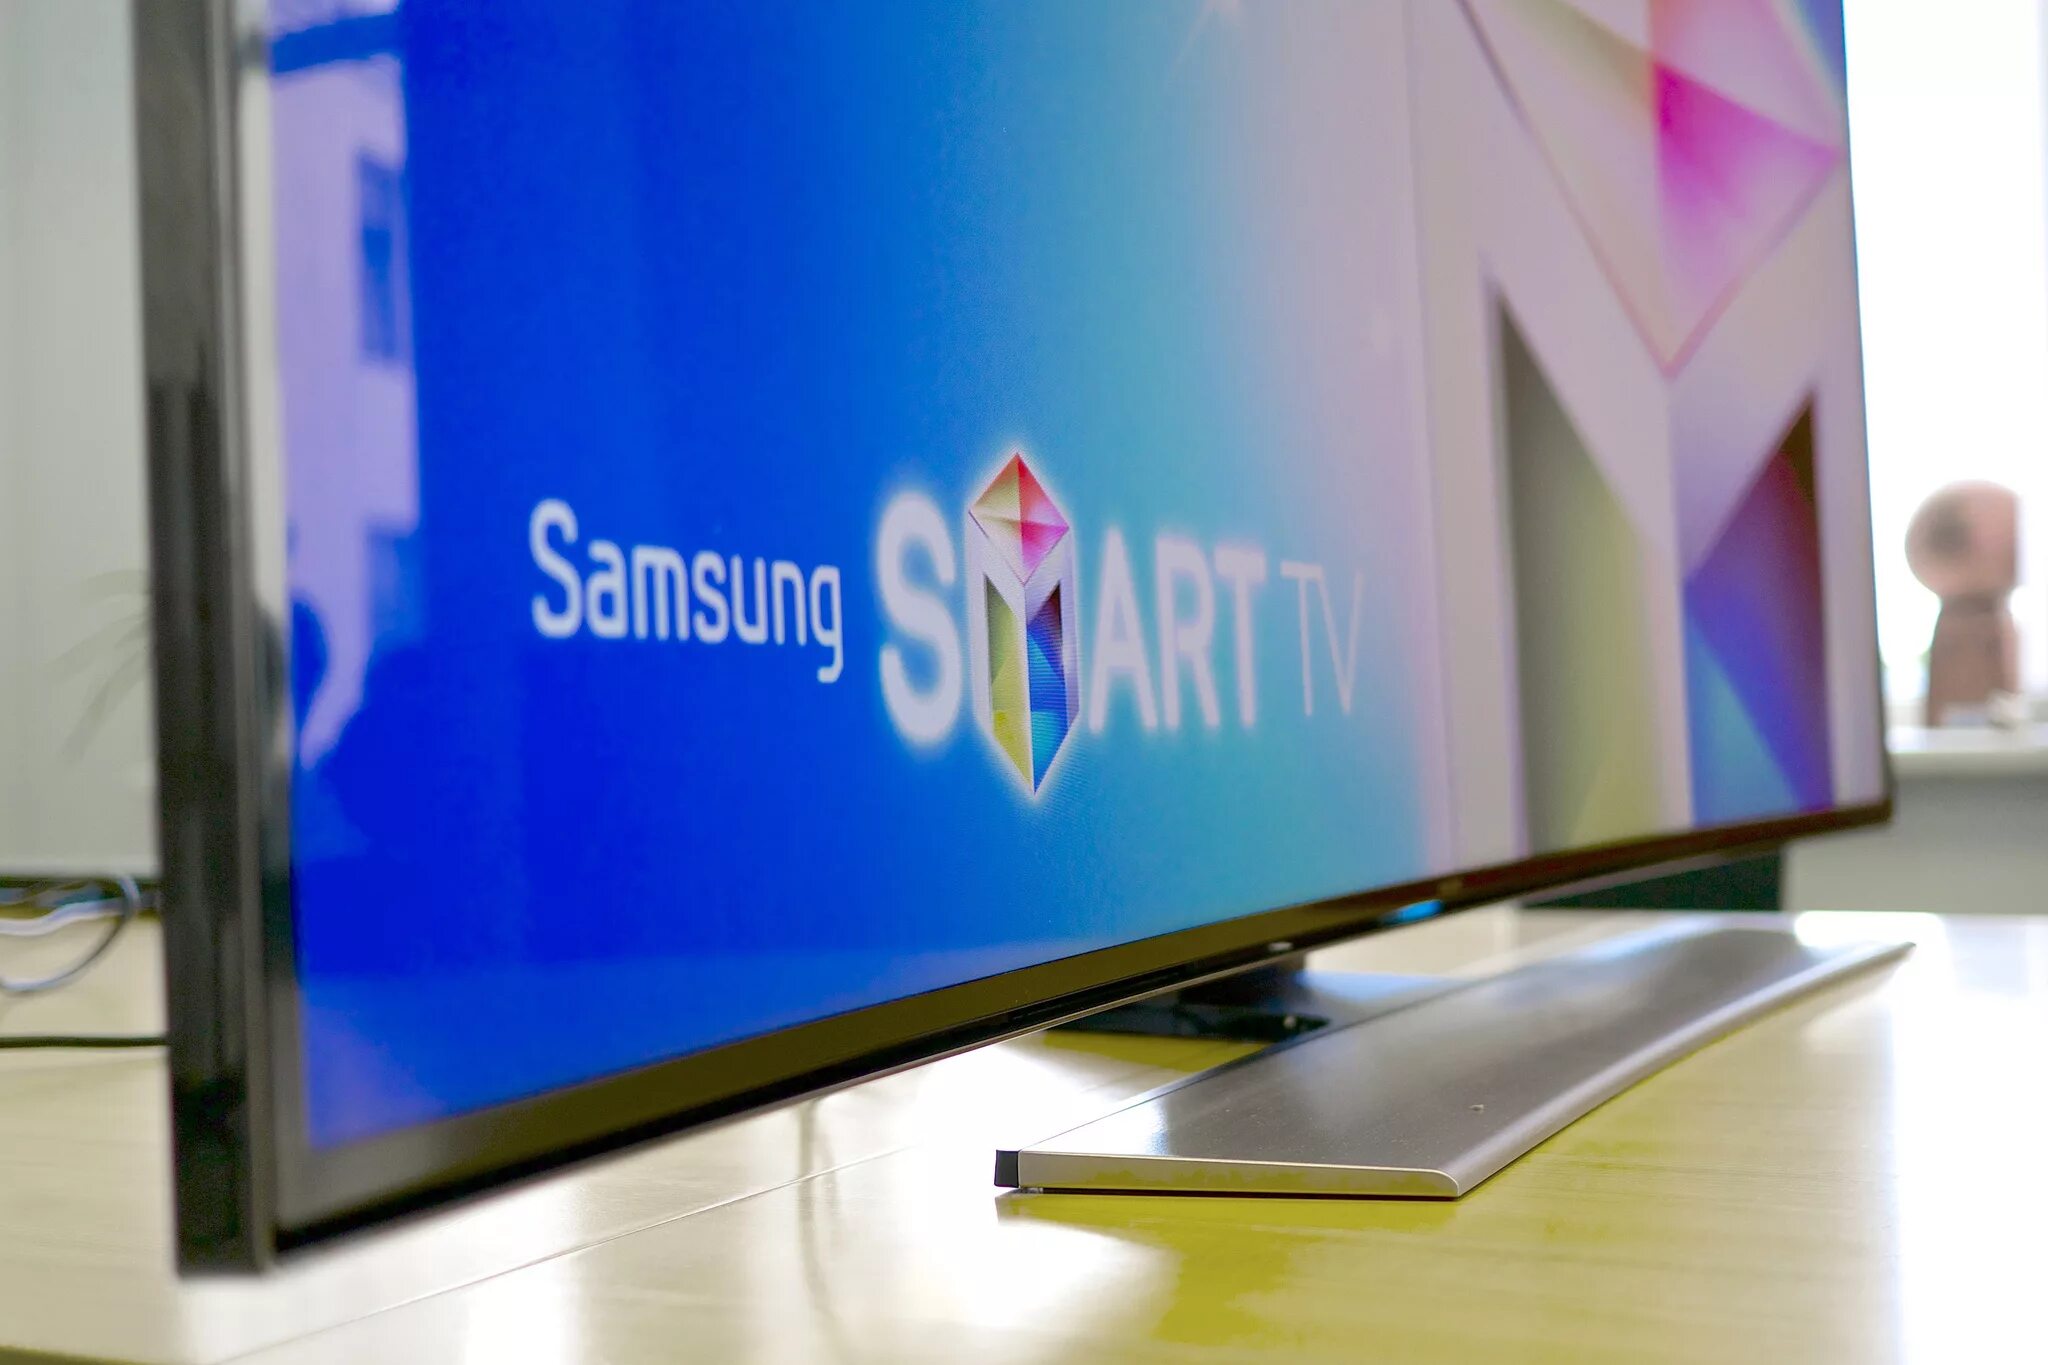 Samsung Smart TV 2022. Телевизор Samsung Smart TV. Led телевизор Samsung смарт. Samsung Smart TV Plus. Завис телевизор самсунг